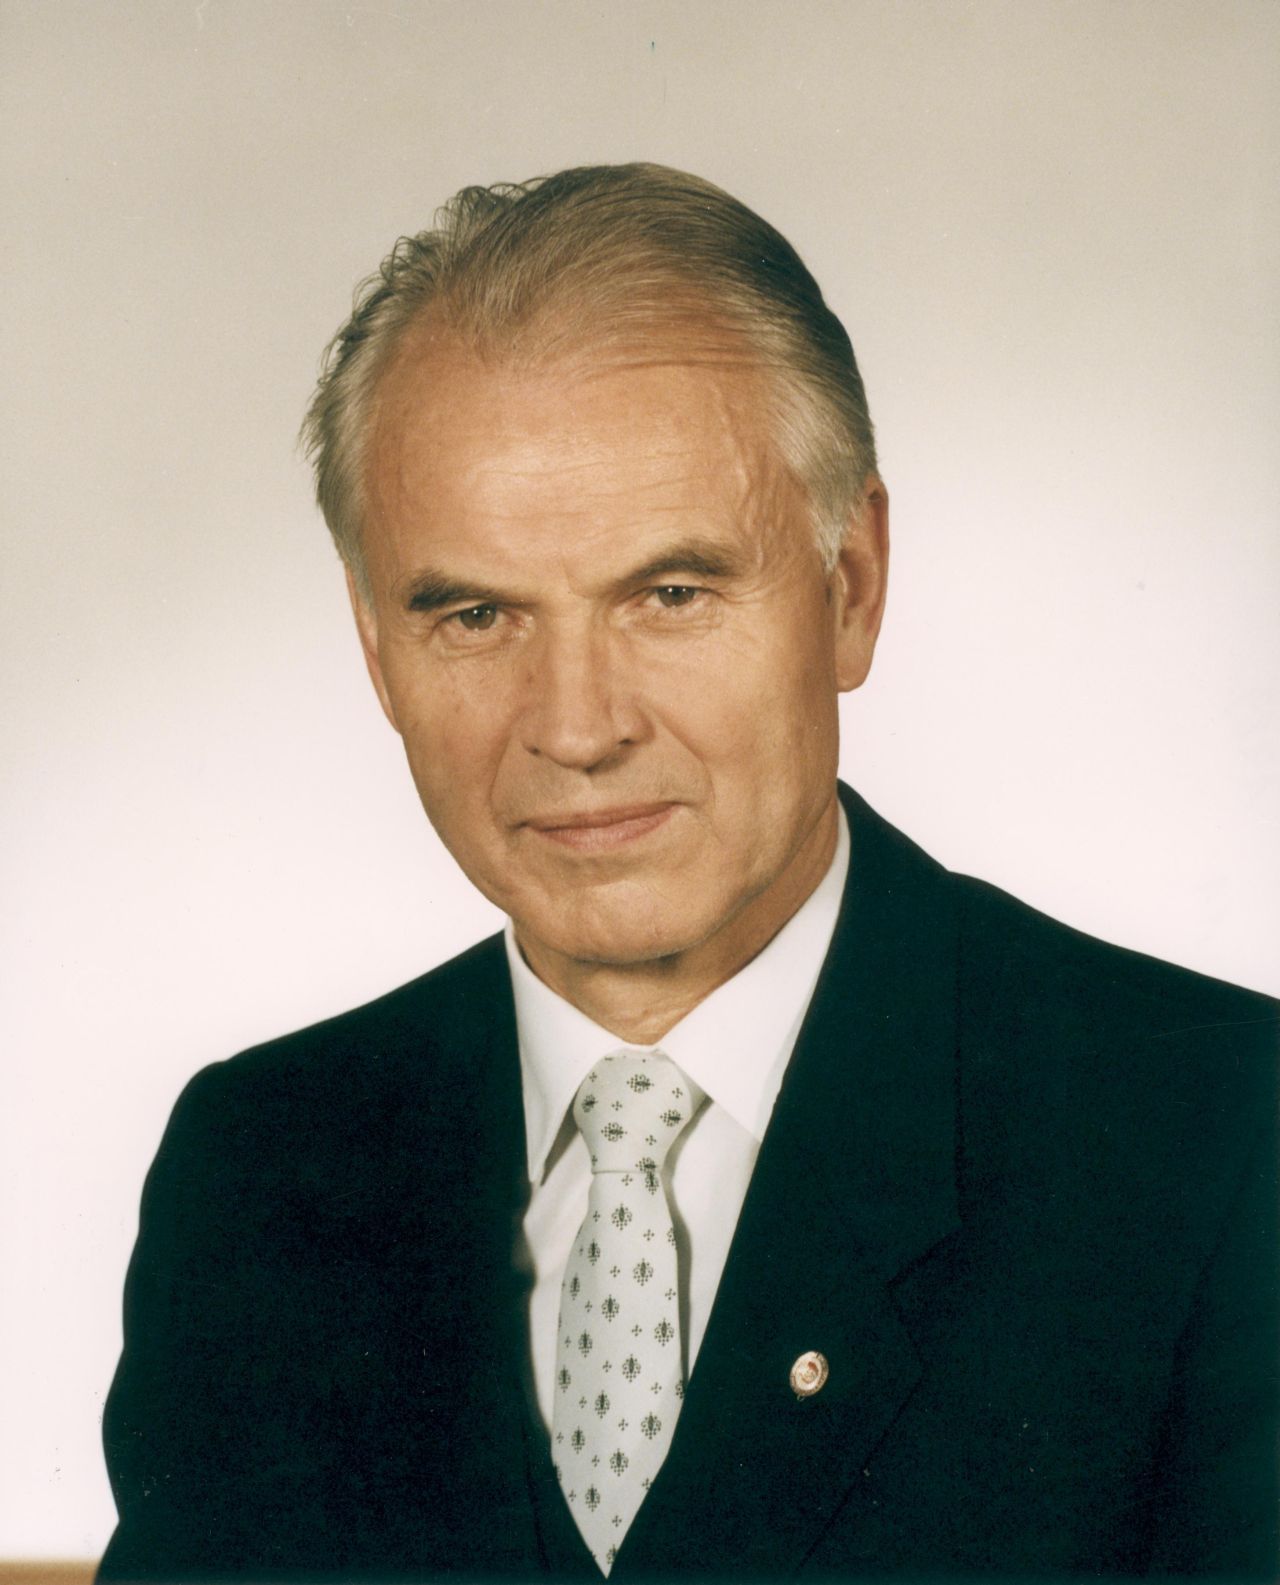 Porträtfoto von Hans Modrow (SED), Ministerpräsident der DDR (bis 11.4.1990).